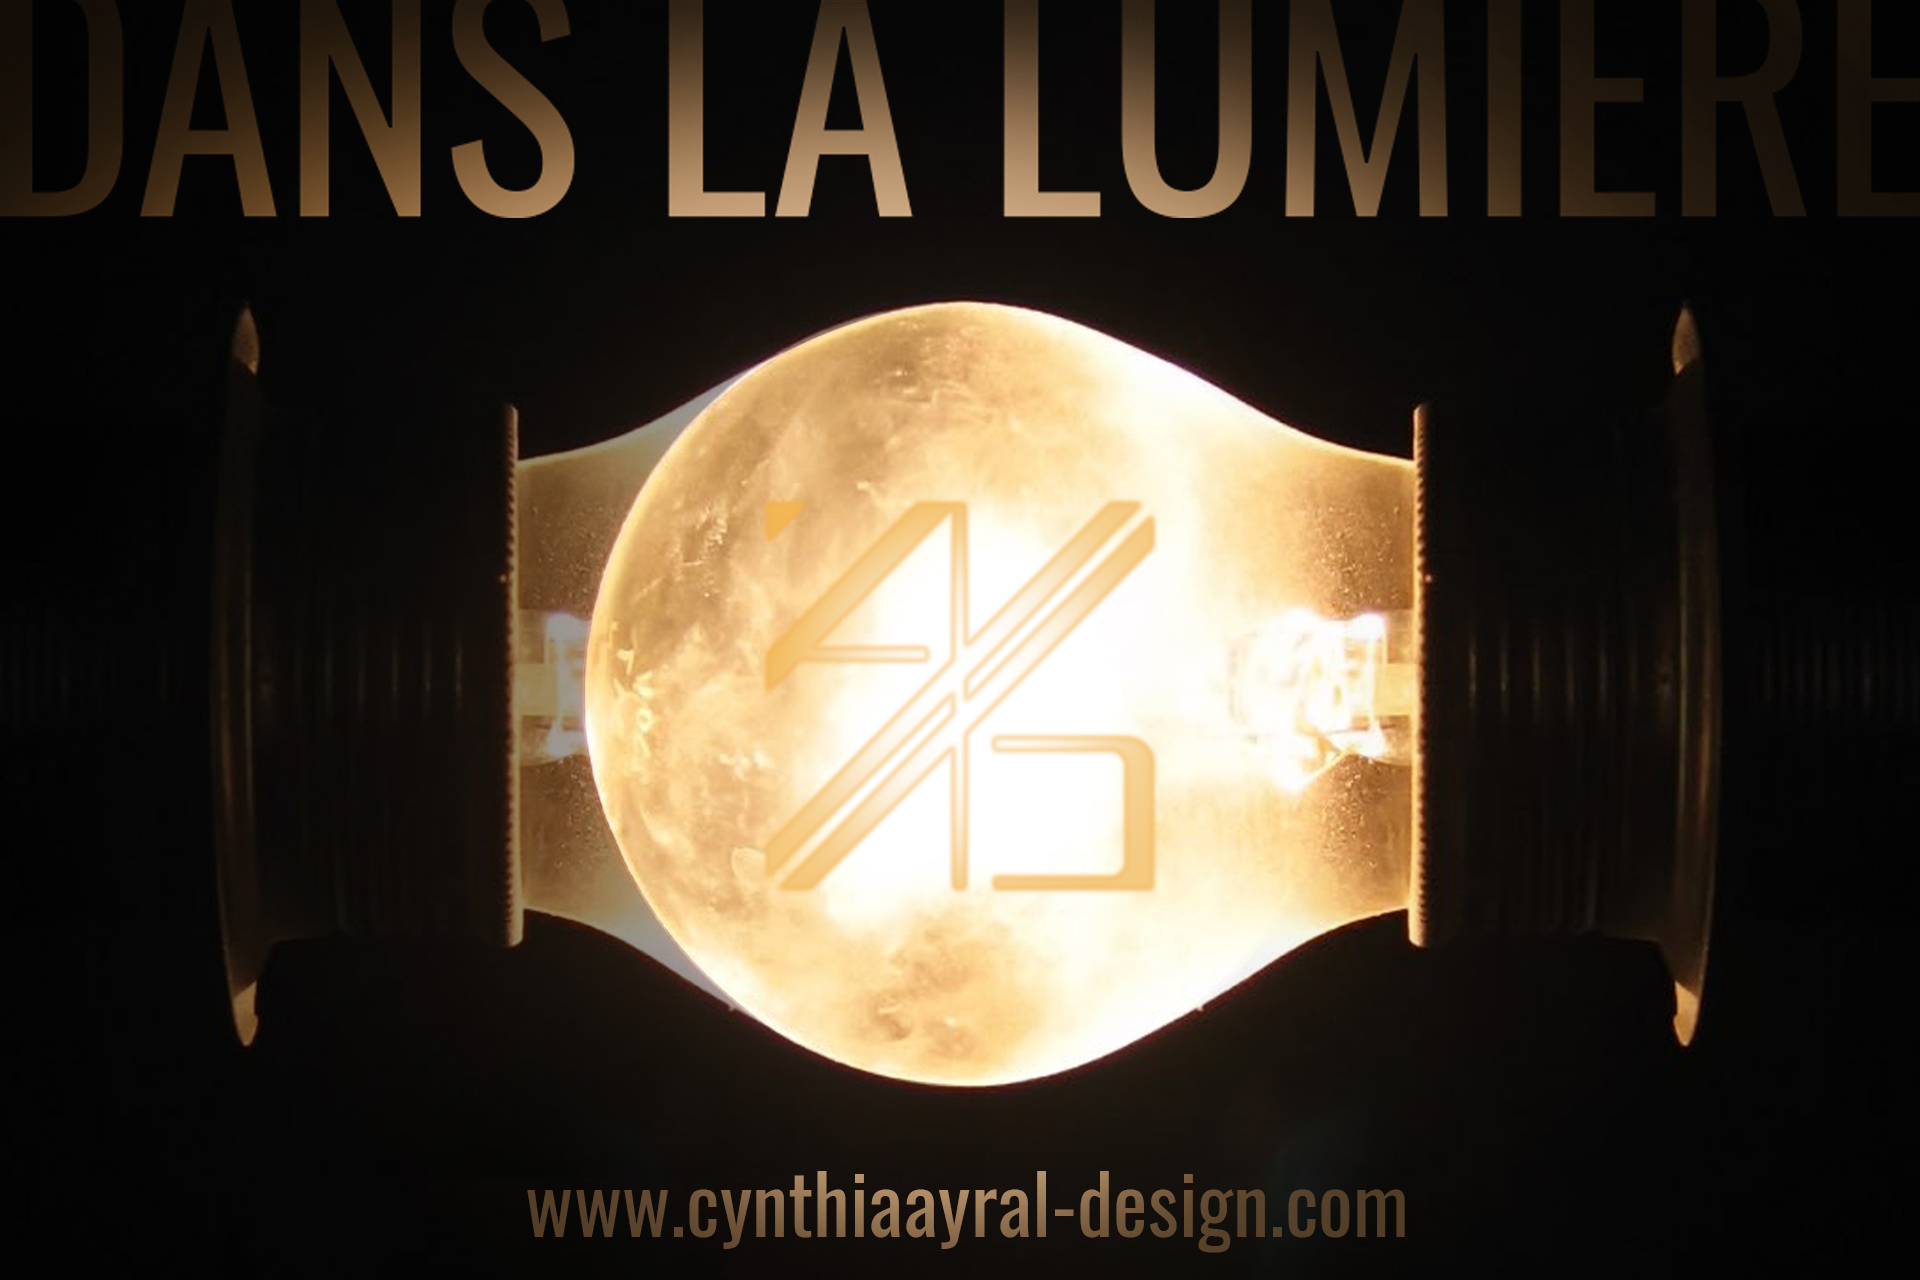 wwwcynthiaayraldesign